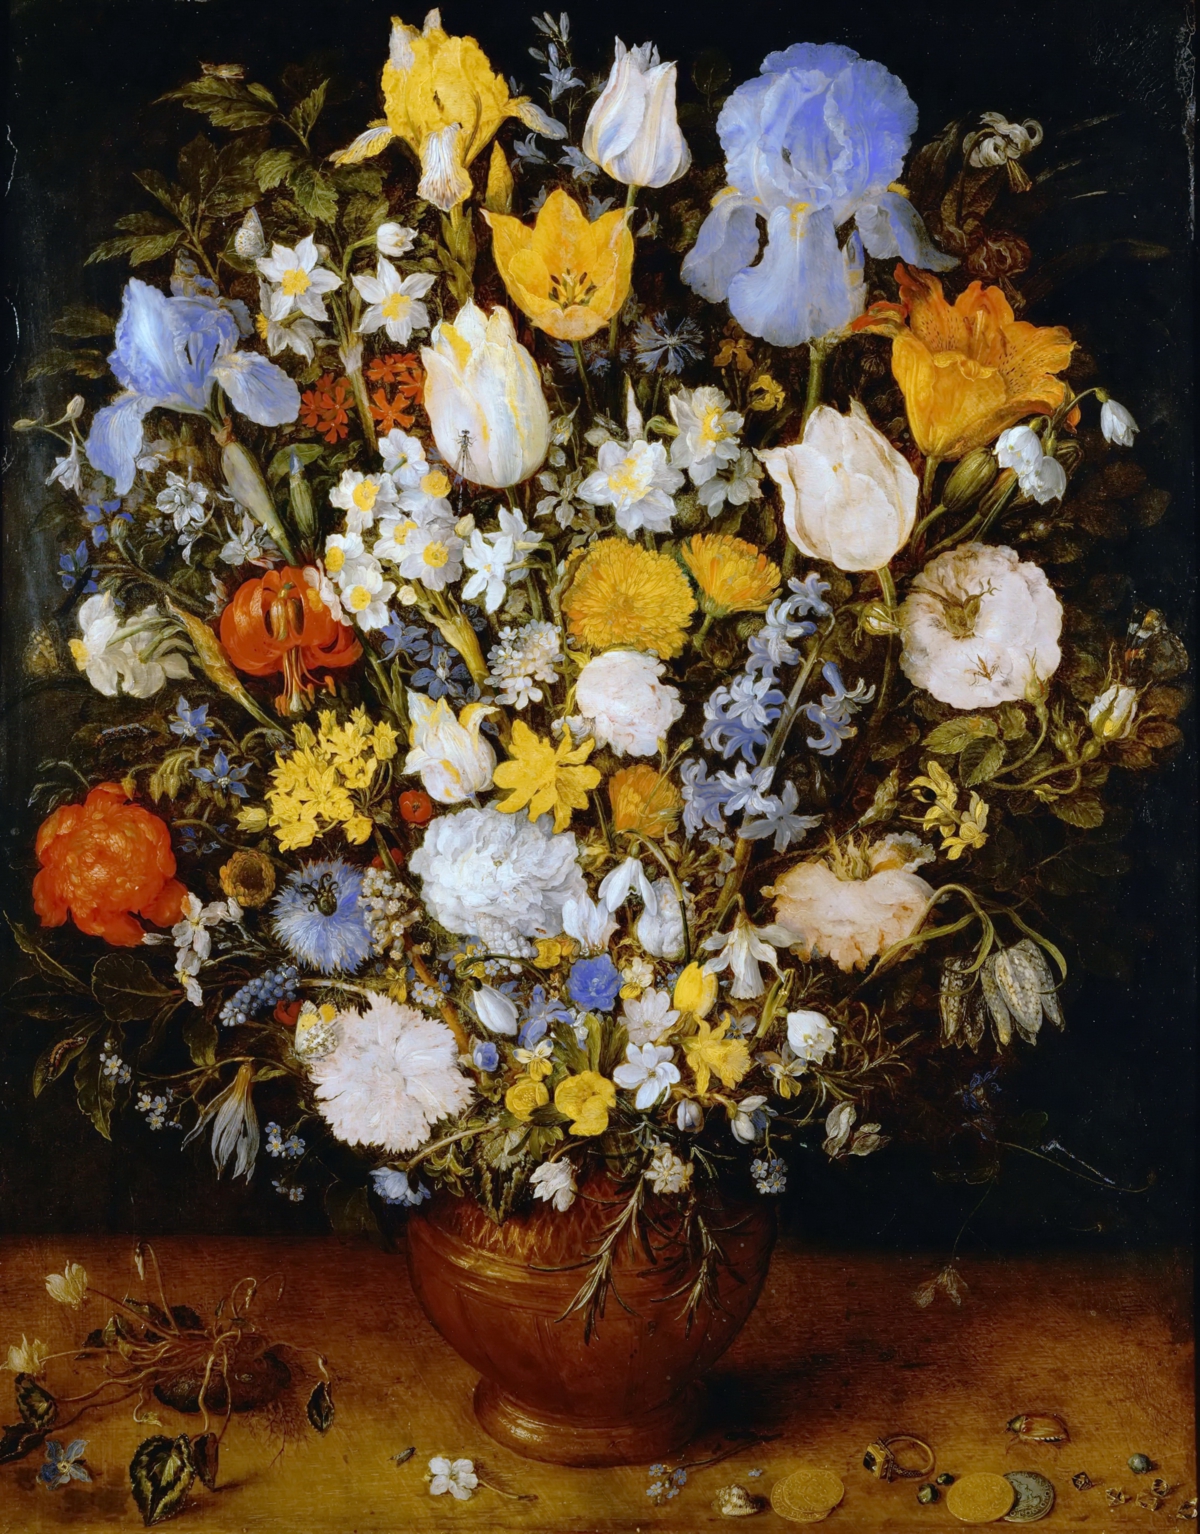 勃鲁盖尔 Jan_Brueghel_the_Elder- (9)_老勃鲁盖尔